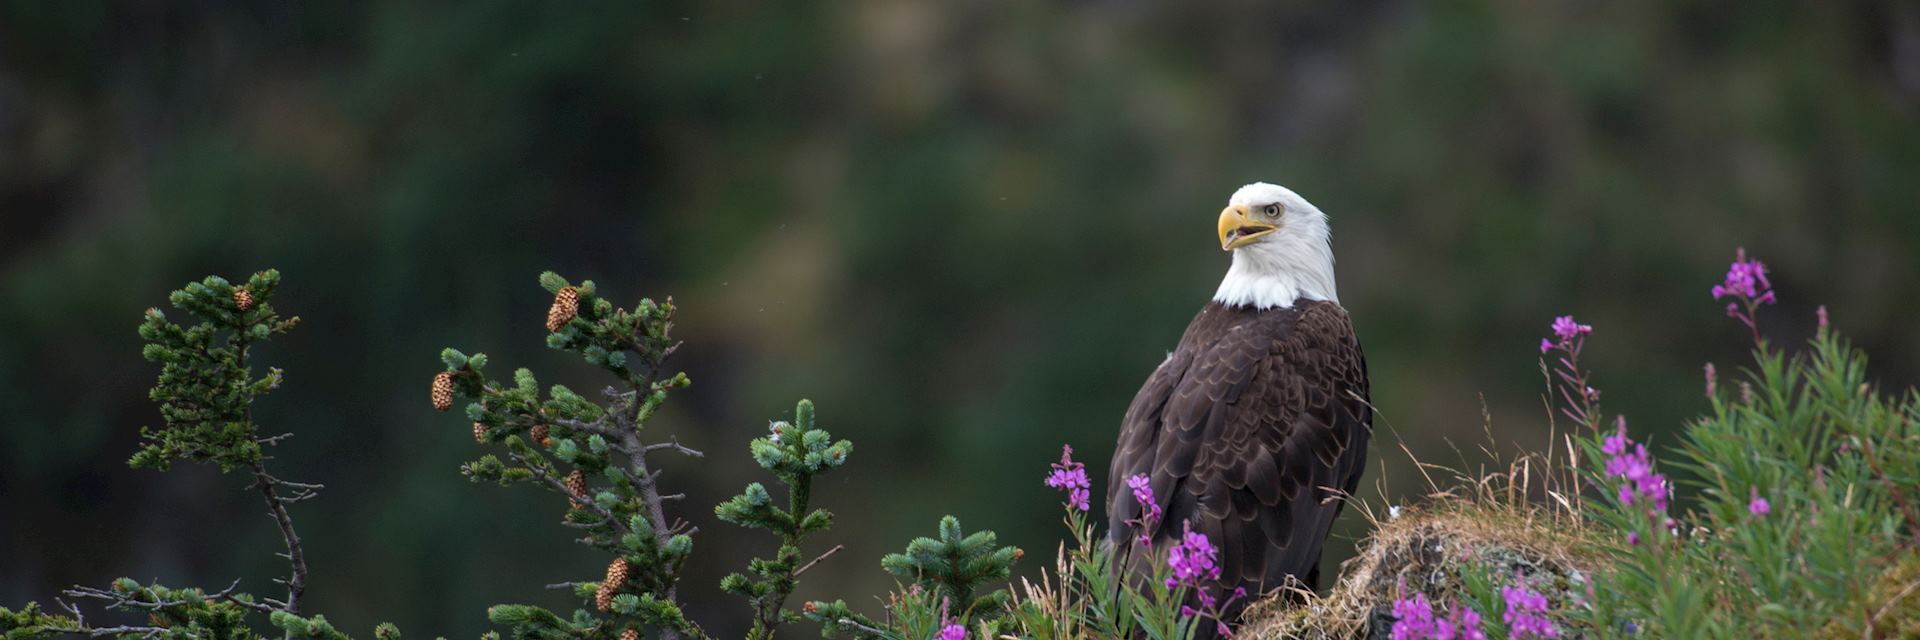 Bald eagle, Terra Nova National Park